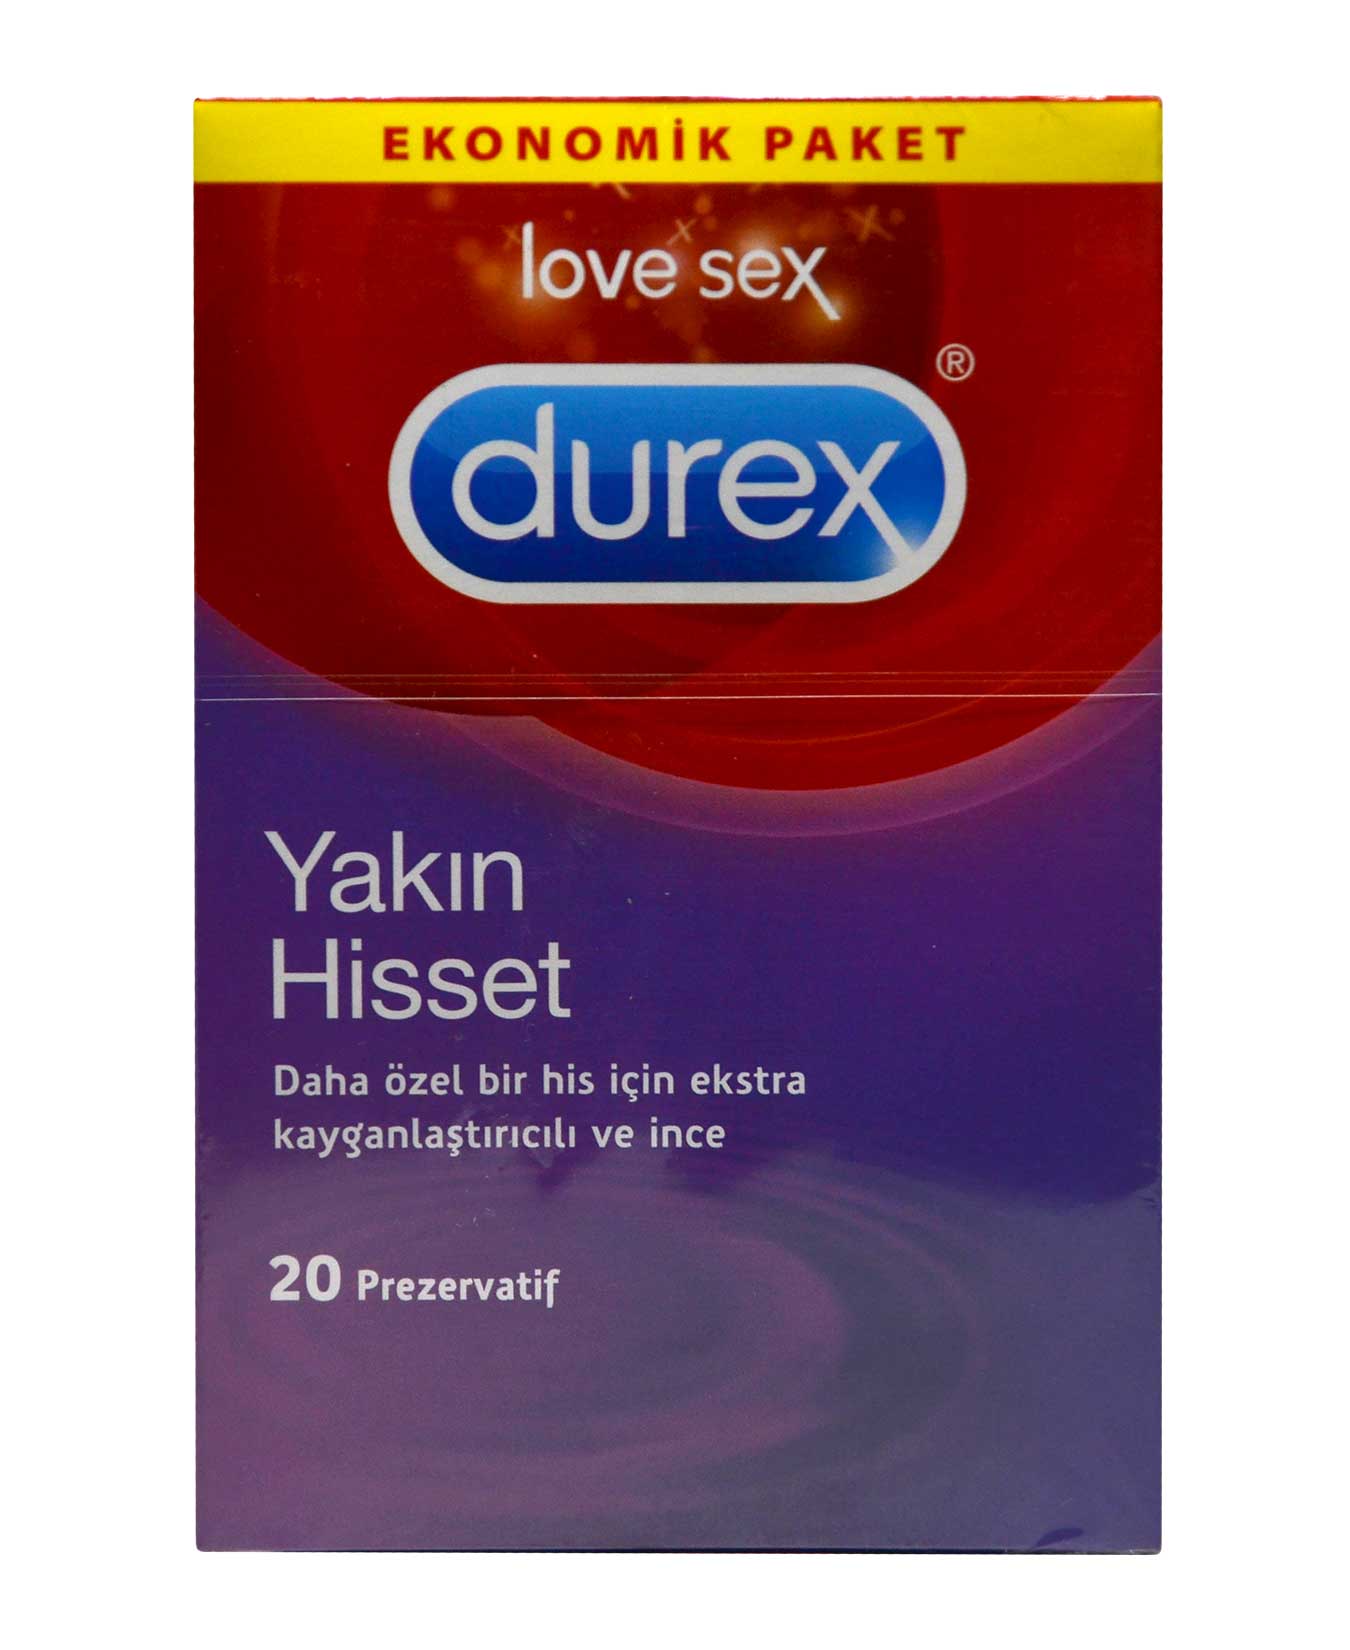 Durex Prezervatif 20'li Yakın Hisset 5052197052763